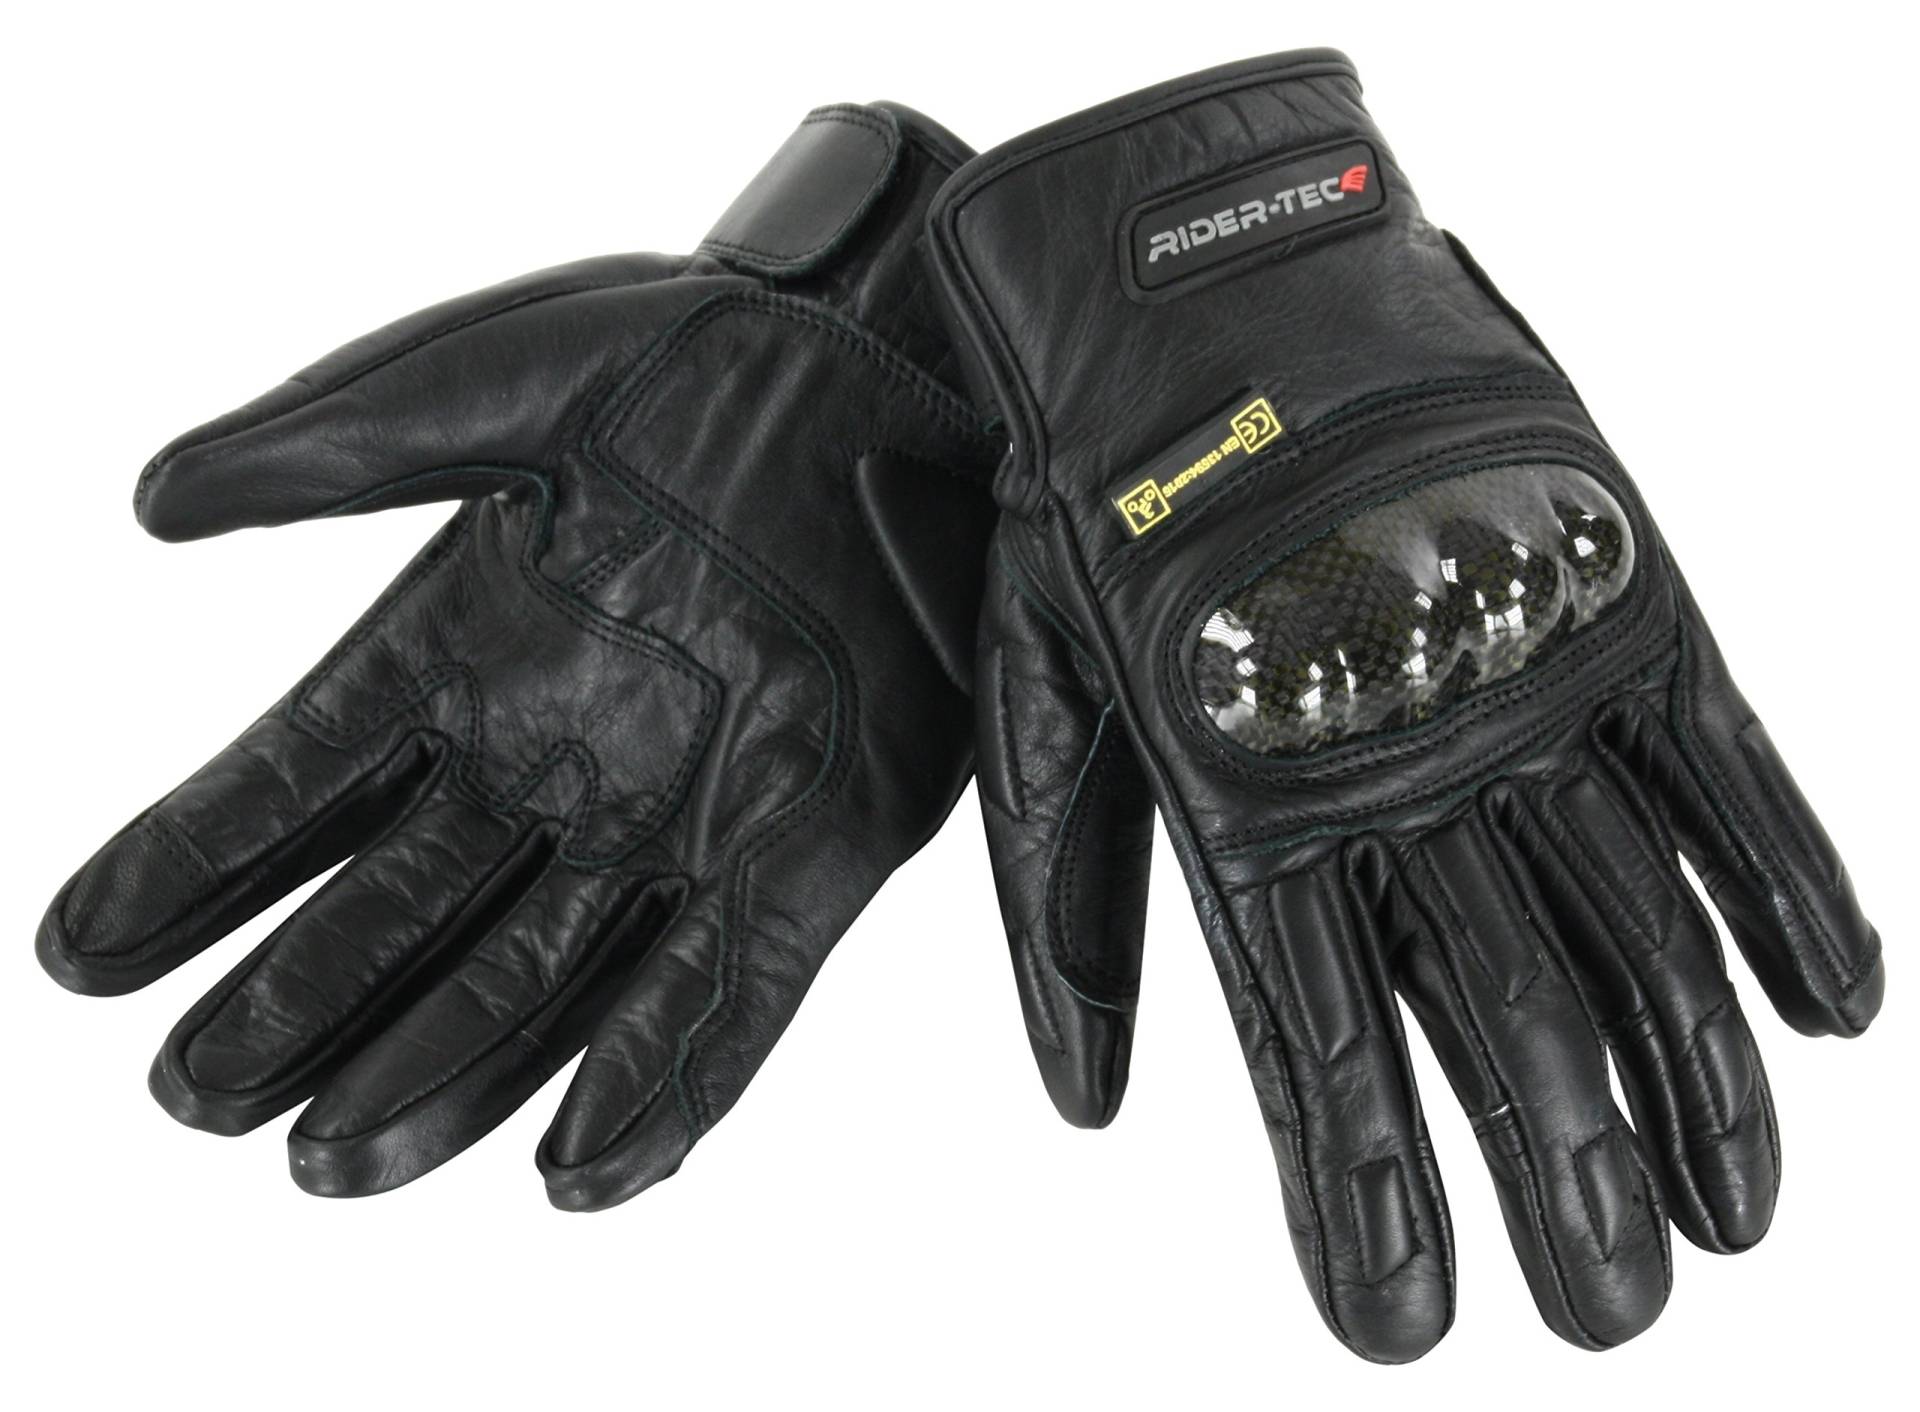 RIDER-TEC Handschuhe Motorrad Leder postgeprüft rt-4133-b, schwarz, Größe XXXL von Rider-Tec